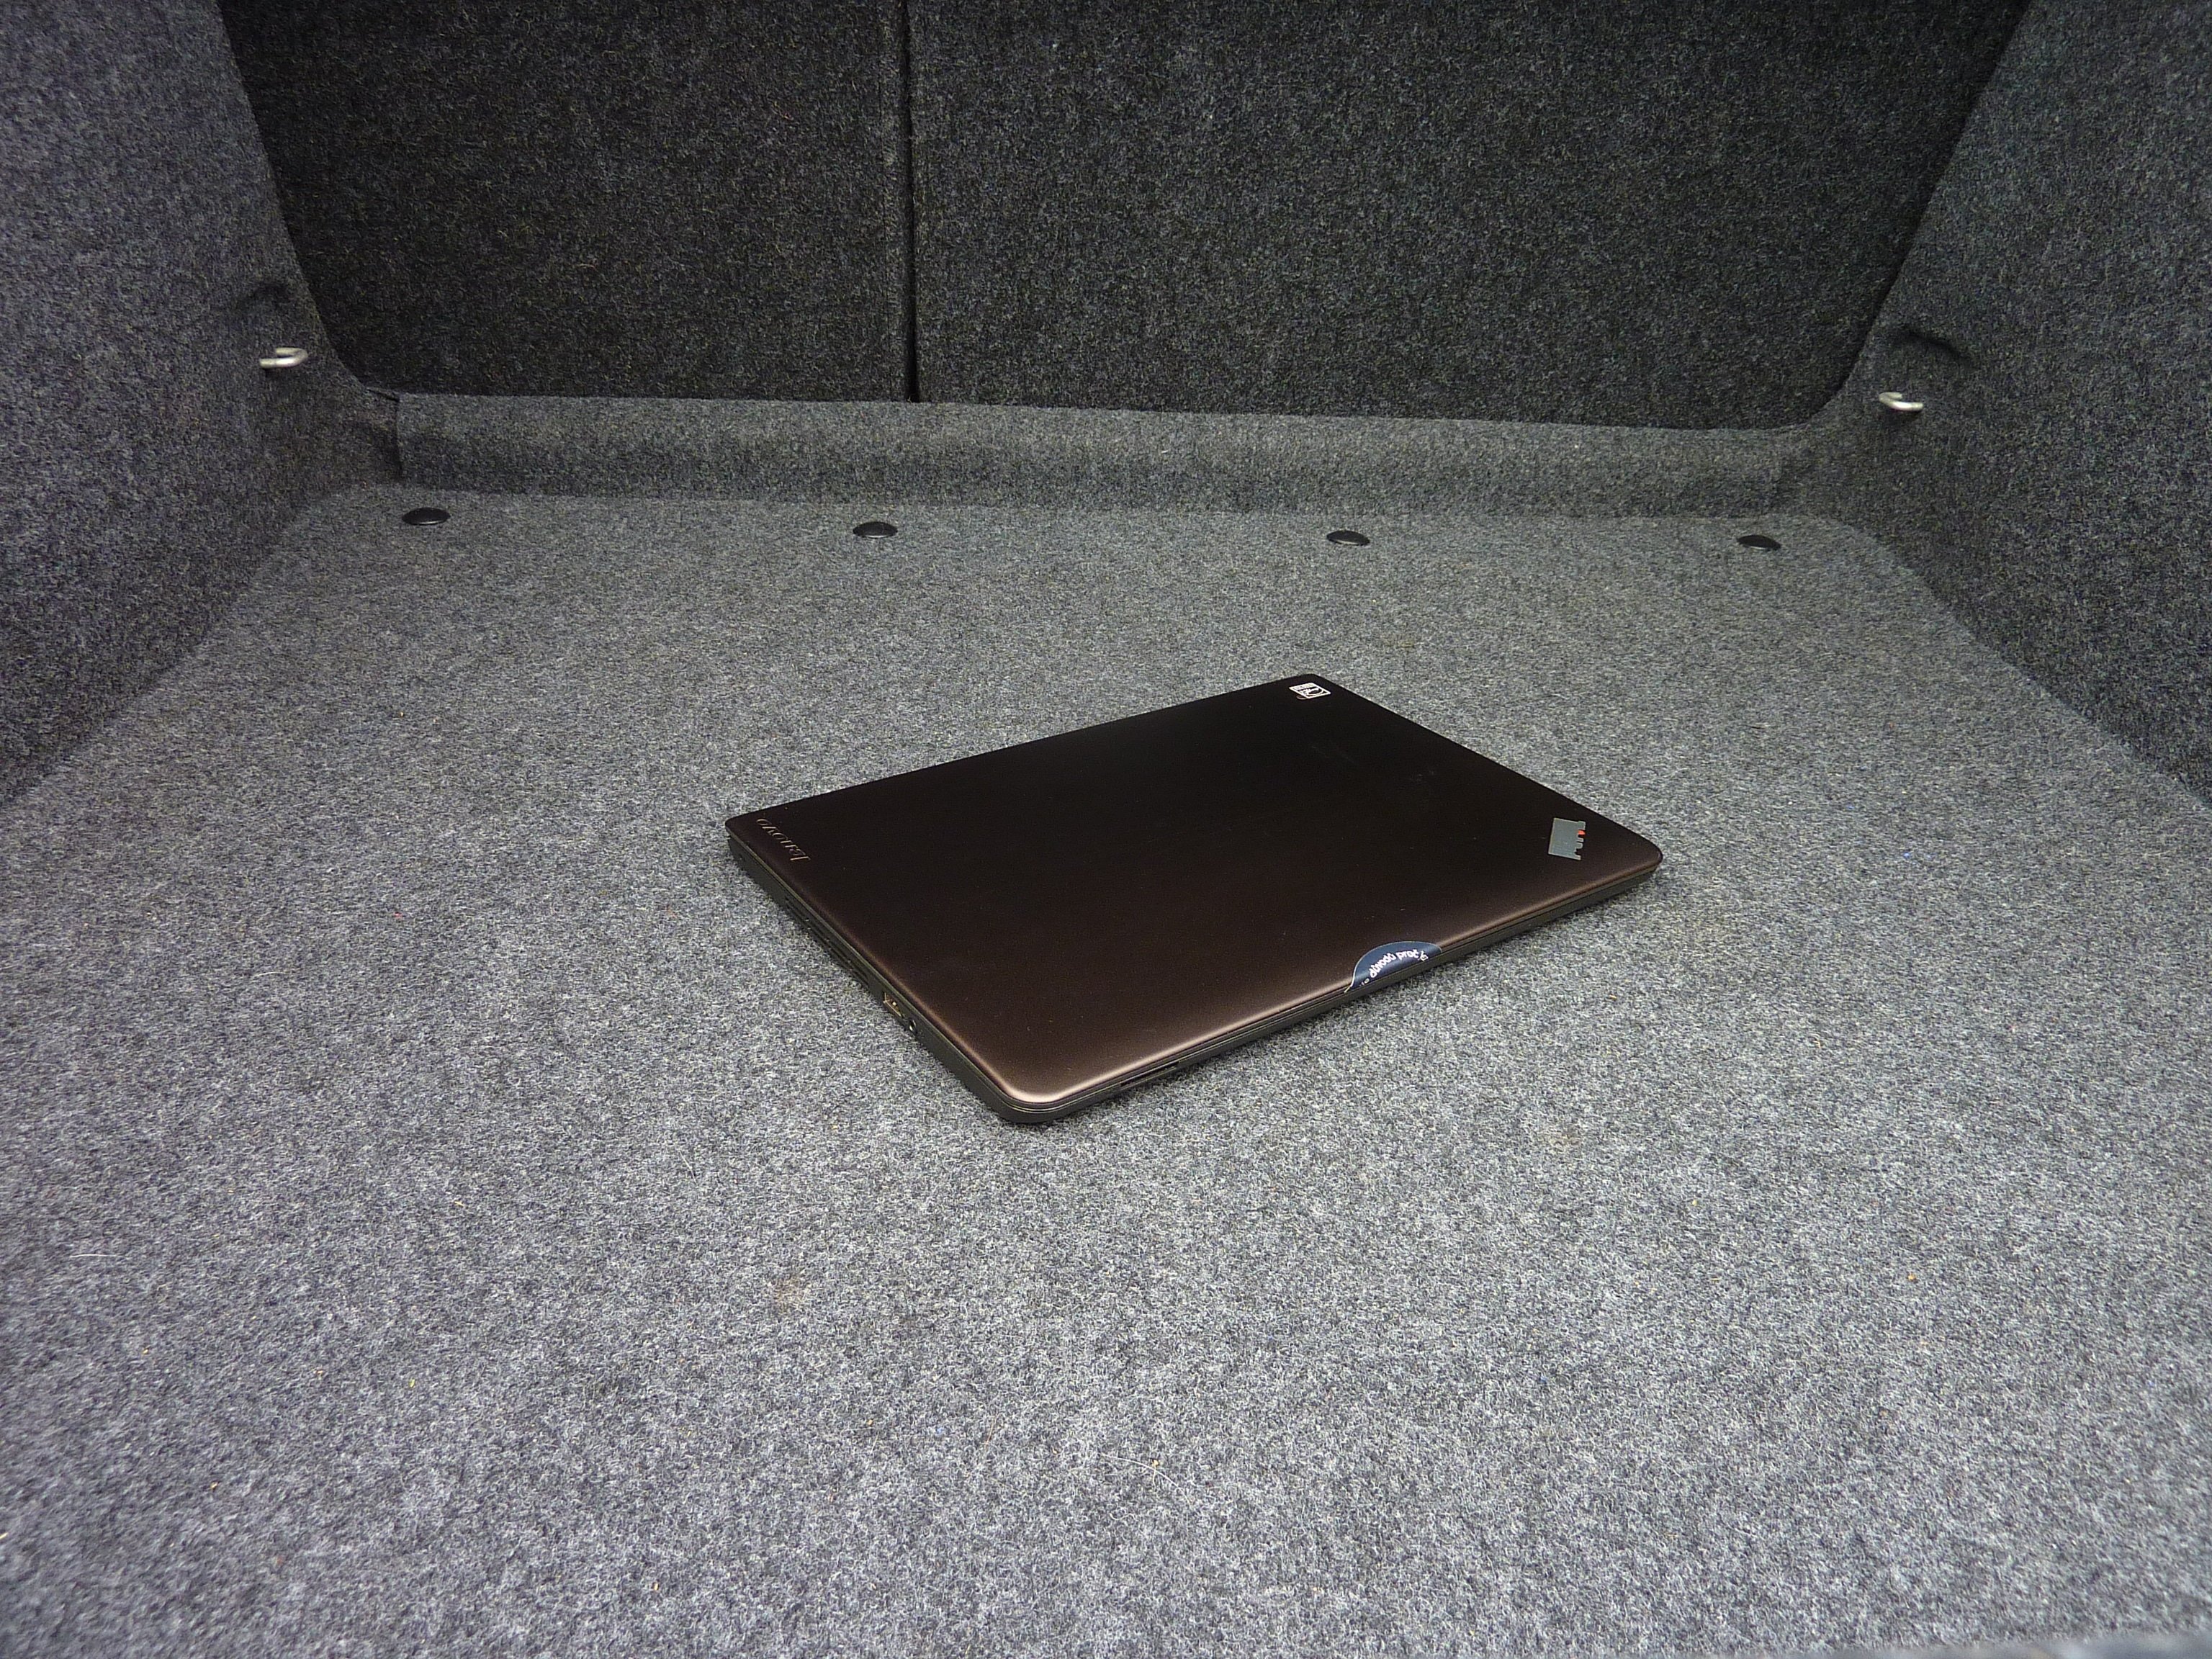 foto laptopu v autě